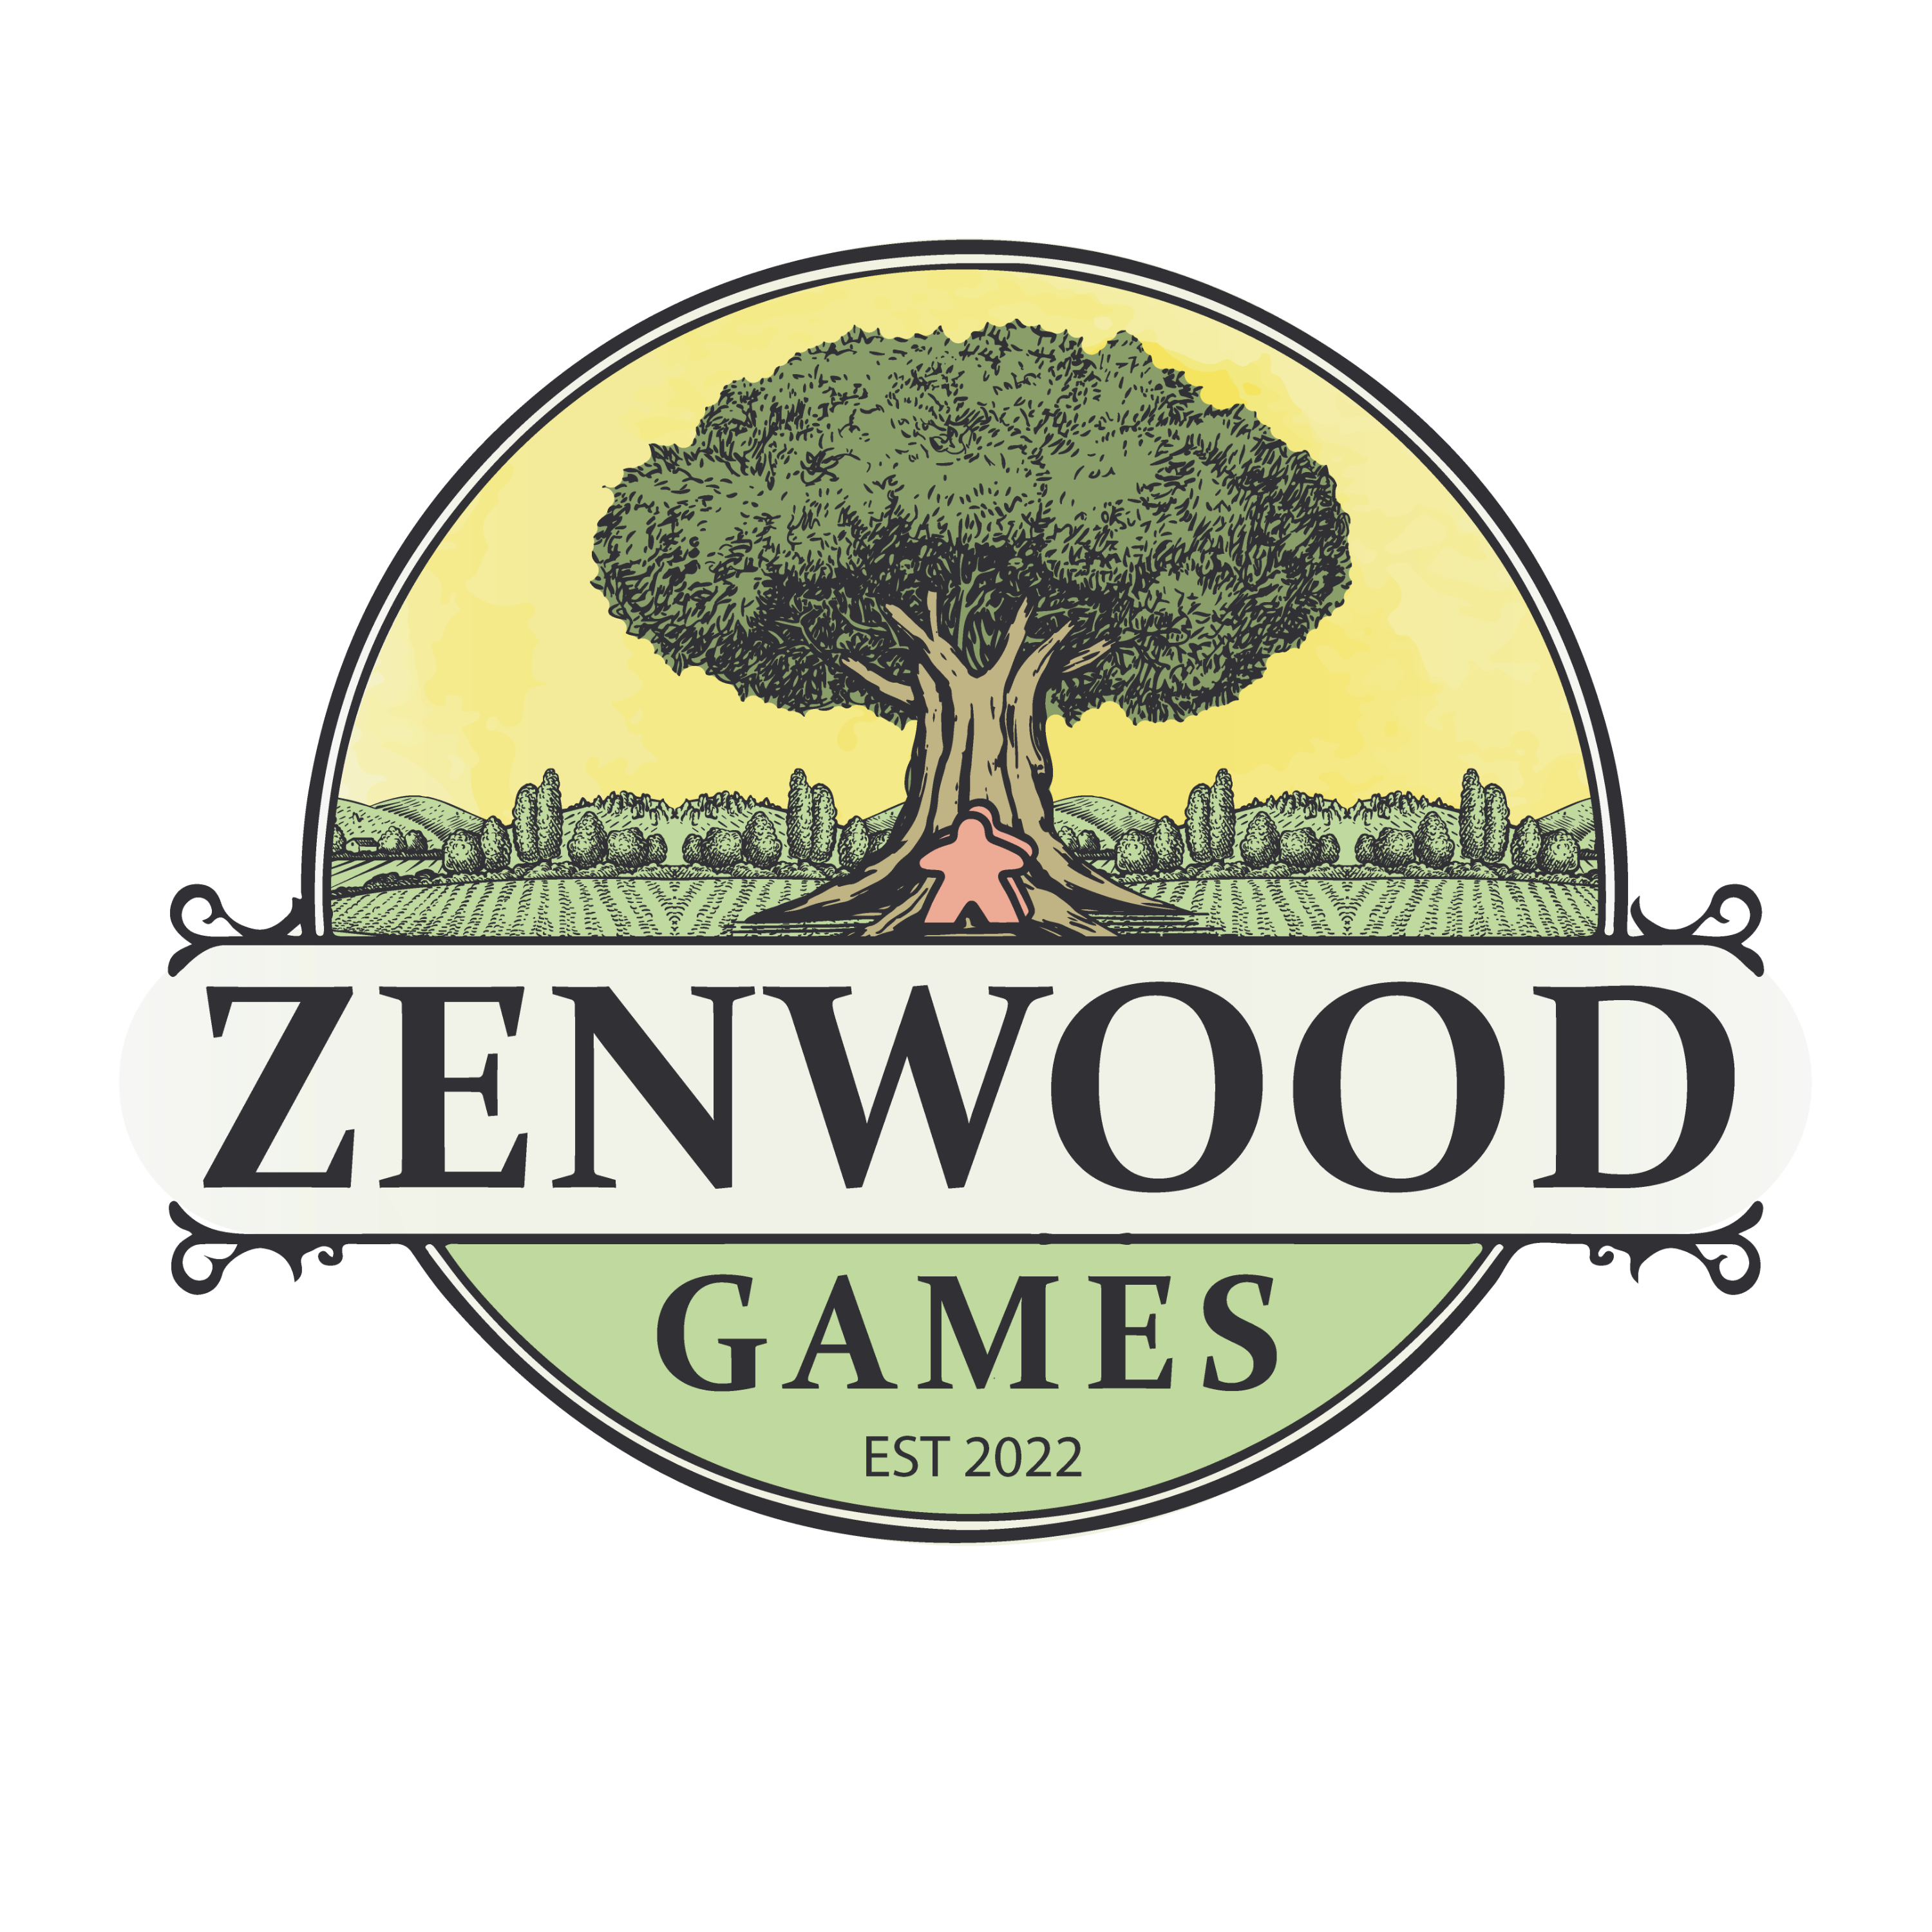 Zenwood Games